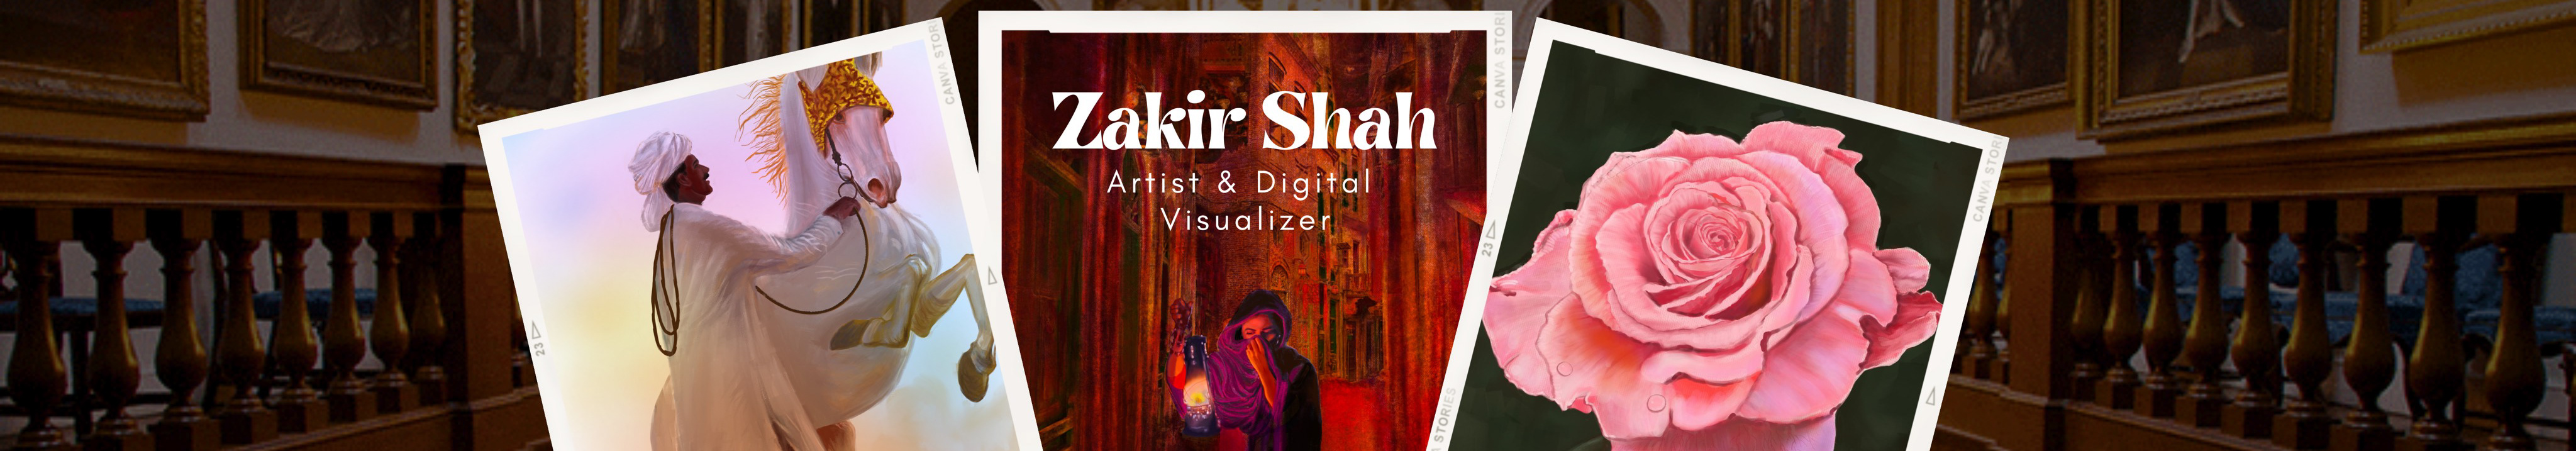 Zakir Shahs profilbanner